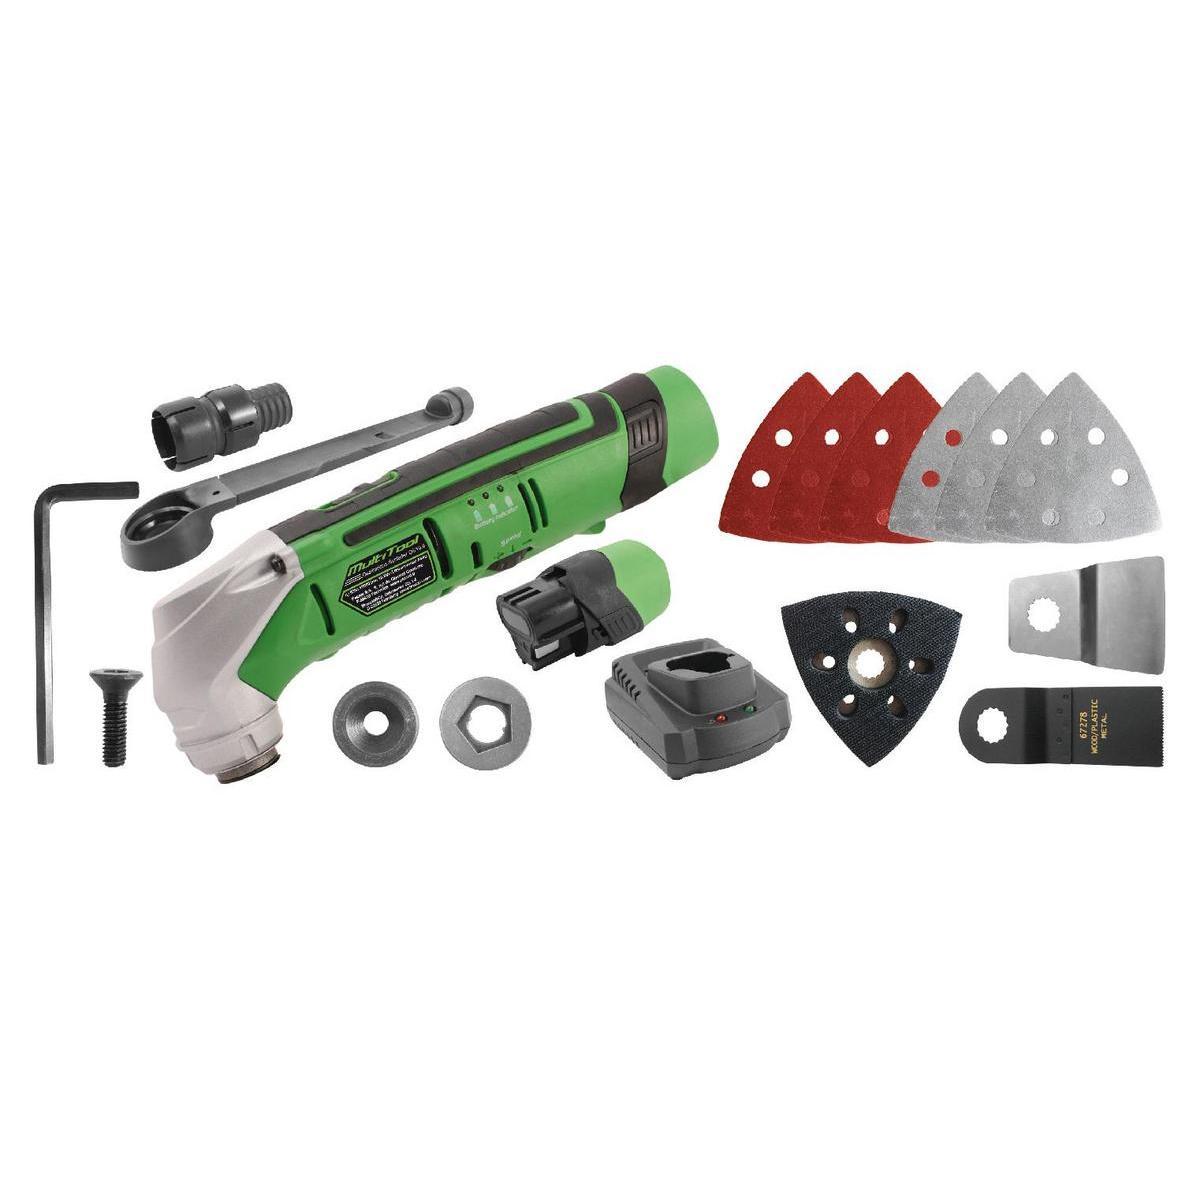 Outil multifonction + accessoires - Plastique et métal - 35 x 28 x H 11 cm - Noir, vert et gris